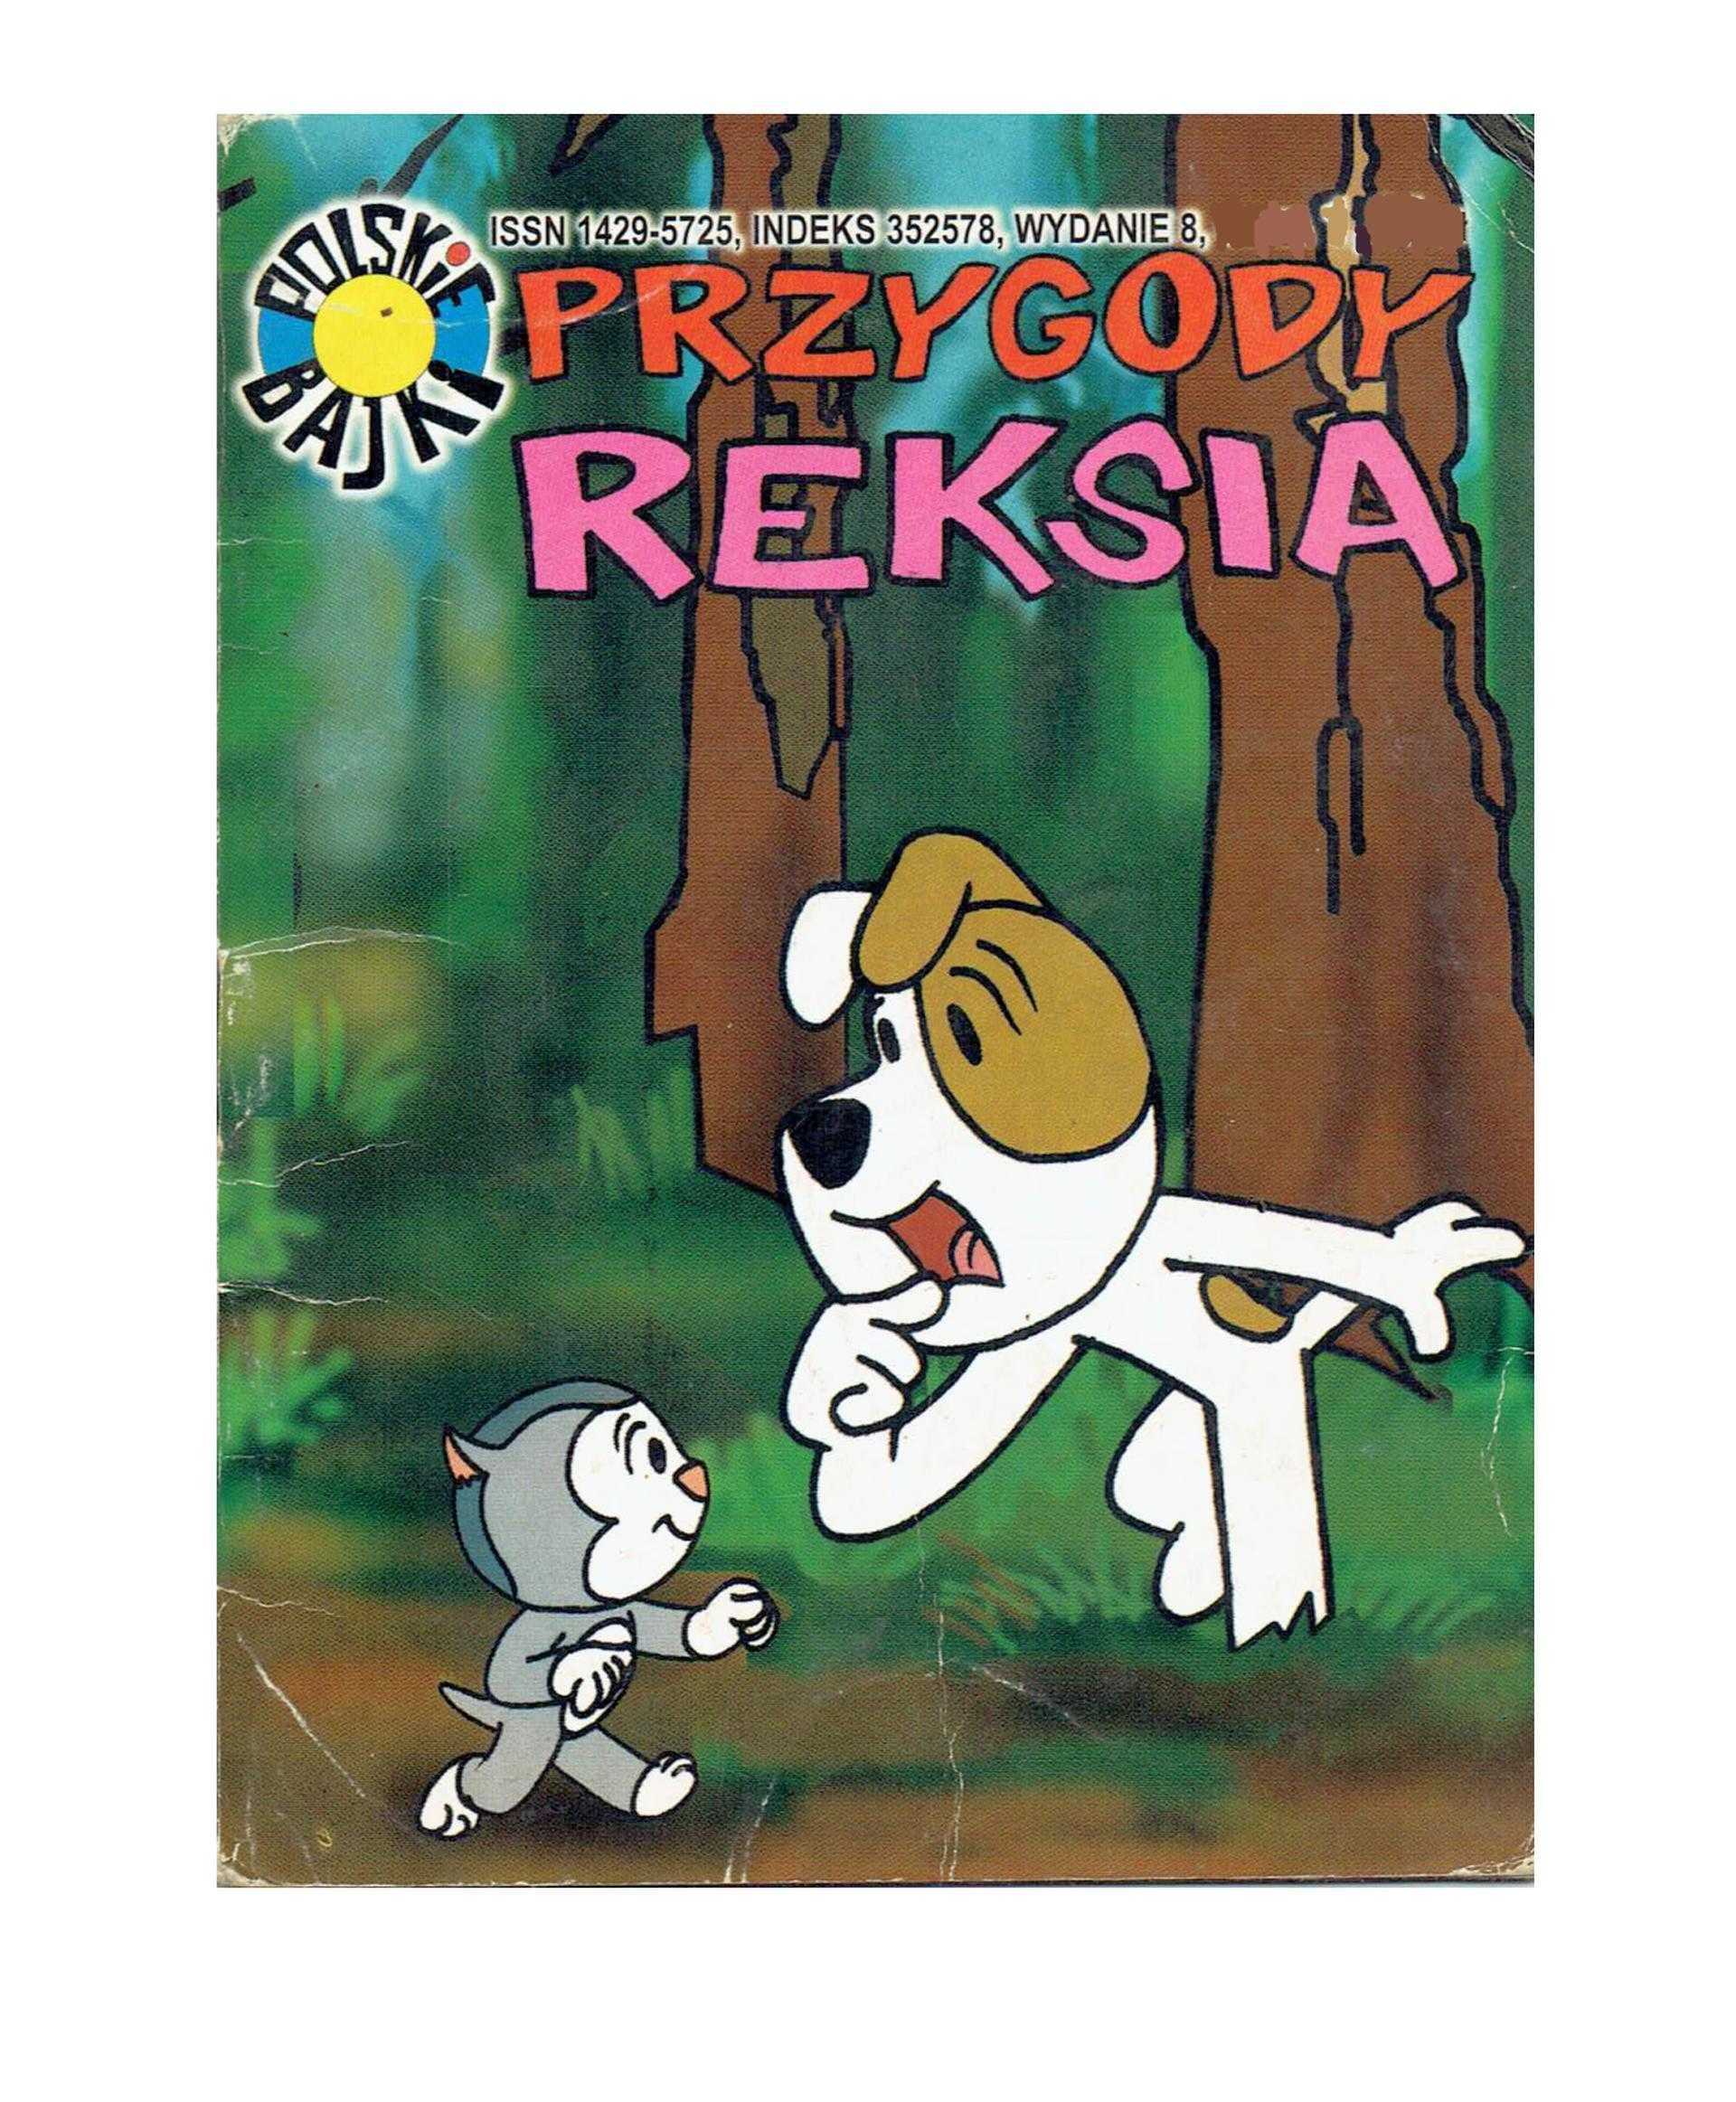 Przygody Reksia Reksio Polskie bajki dobranocki 2000 rok L. Marszałek